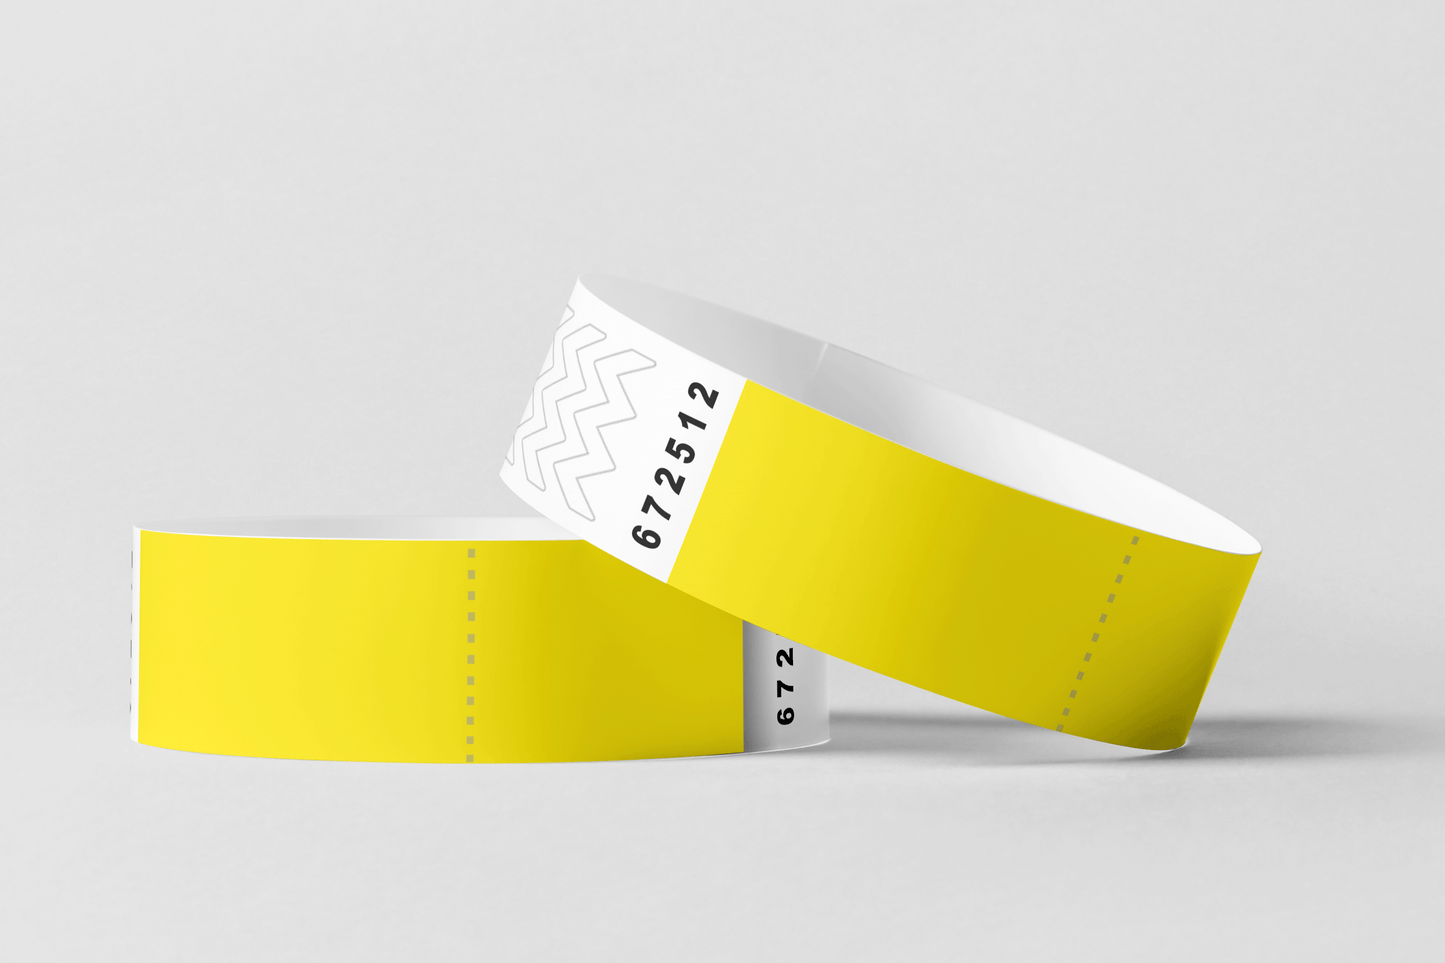 Et par gule festivalarmbånd, Papir armbånd med KUPONG På lager fra JM Band NO, på hvit bakgrunn.